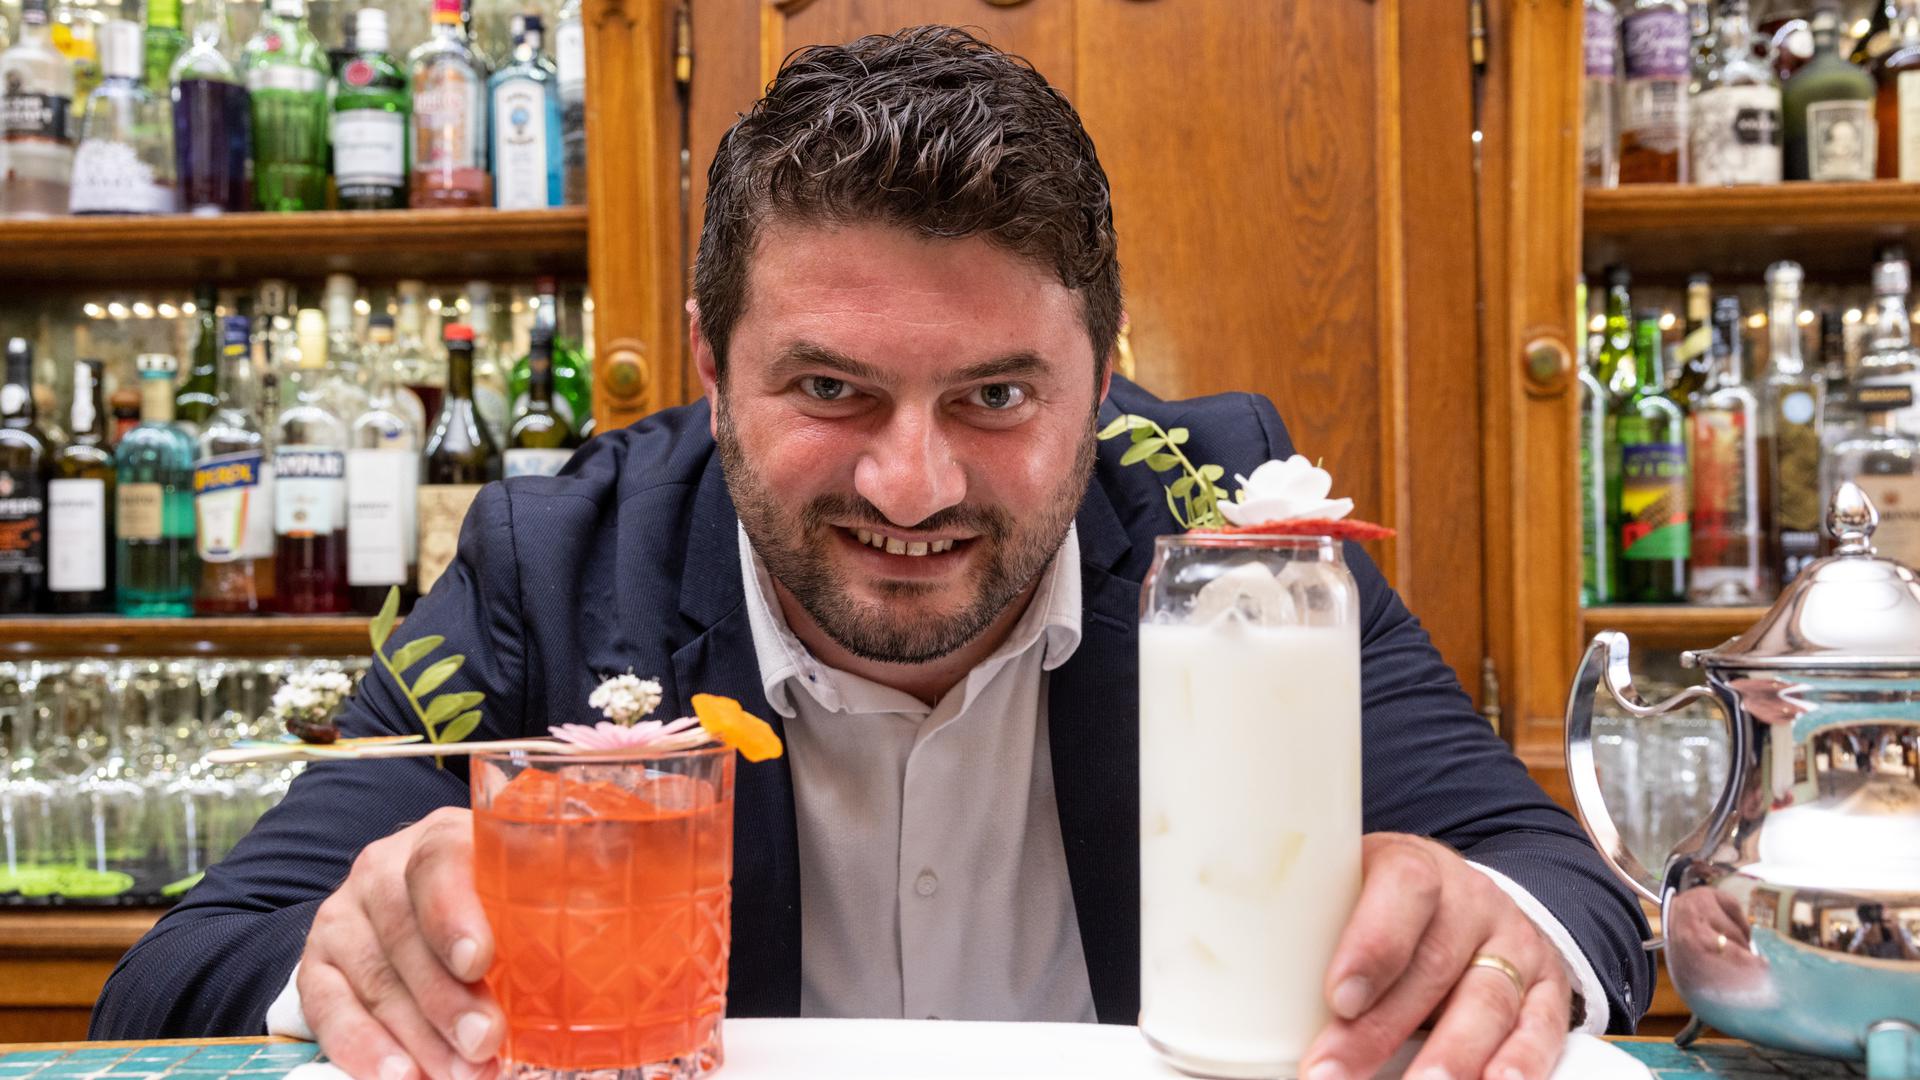 Marius Bîrzan, chef de bar au Grand Hôtel Cravat, vise le titre de champion du monde de cocktails, catégorie "before dinner", en novembre à Cuba.